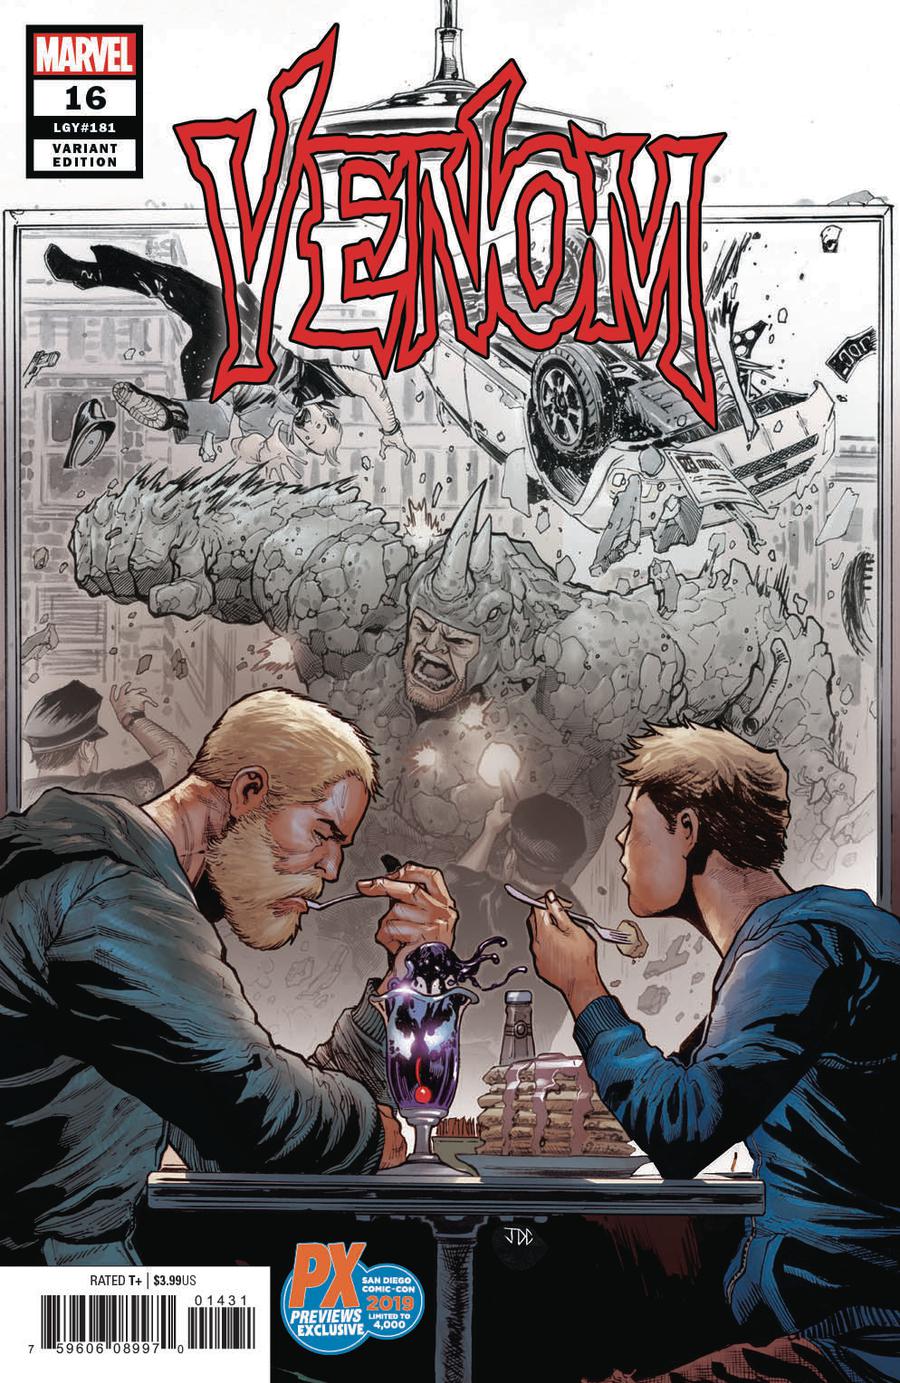 Venom Vol 4 #16 Cover C SDCC 2019 Exclusive Variant Cover